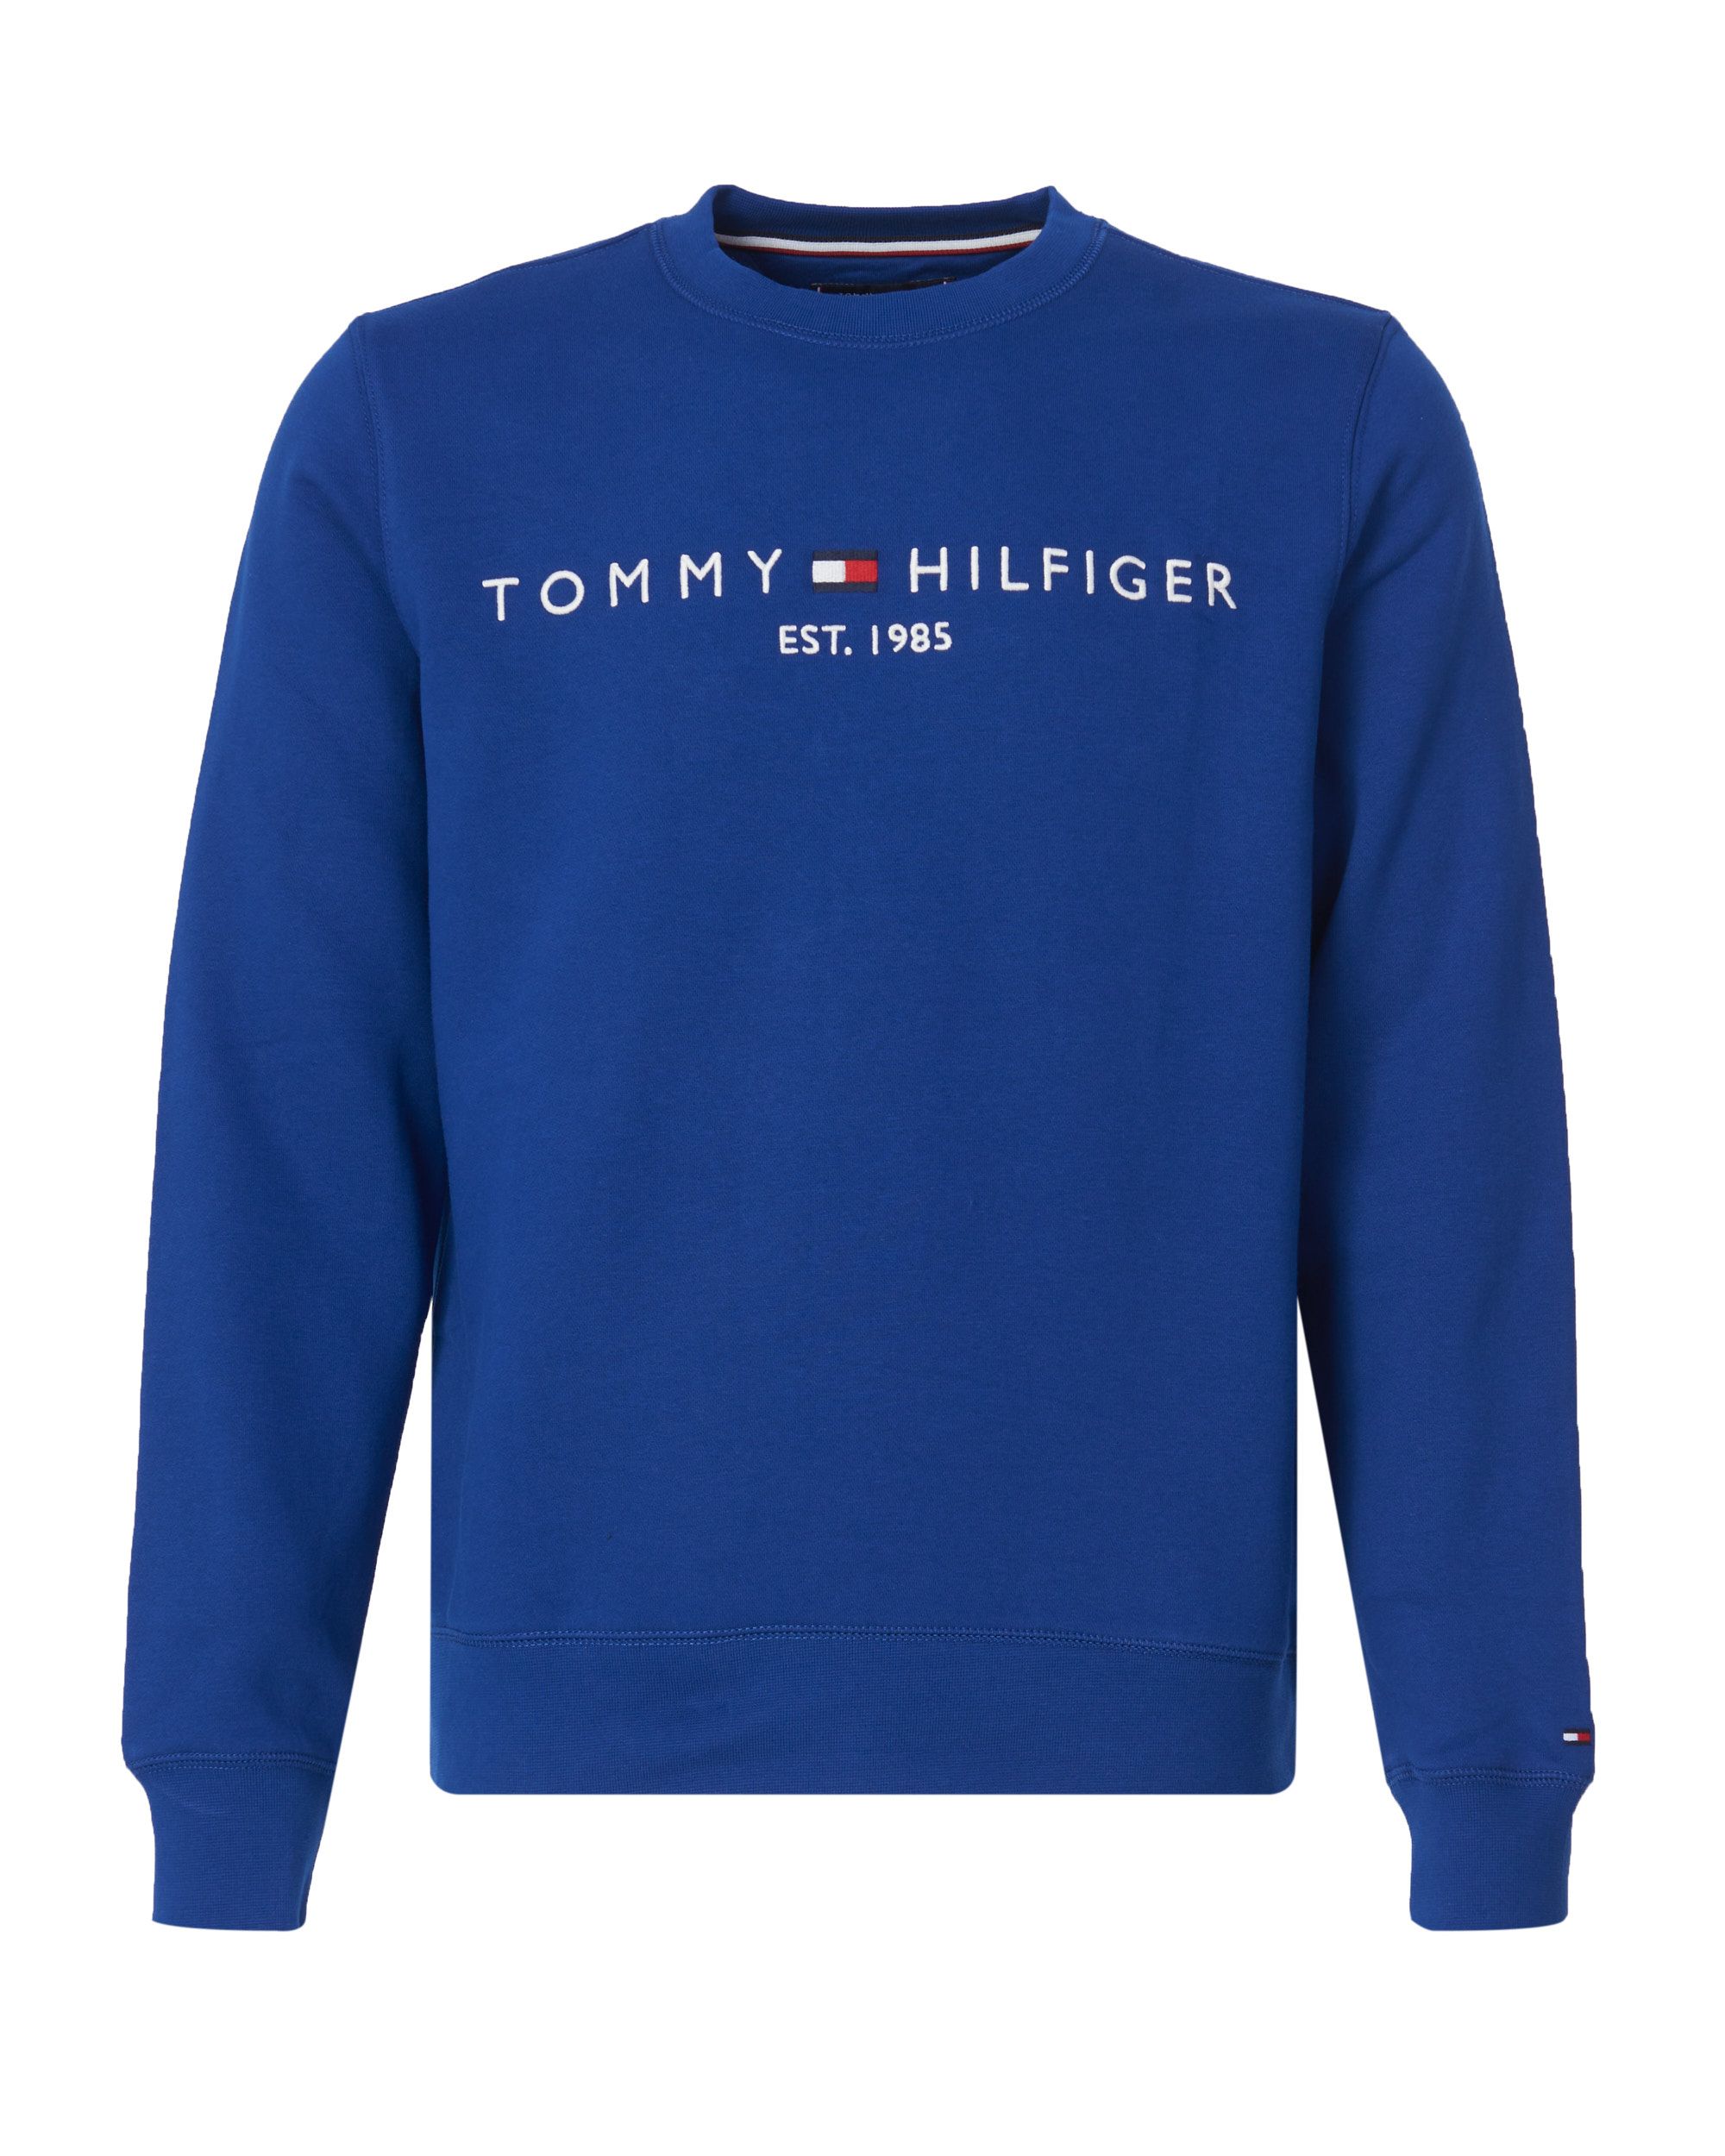 Tommy Hilfiger Menswear Sweater Blauw 083034-001-L